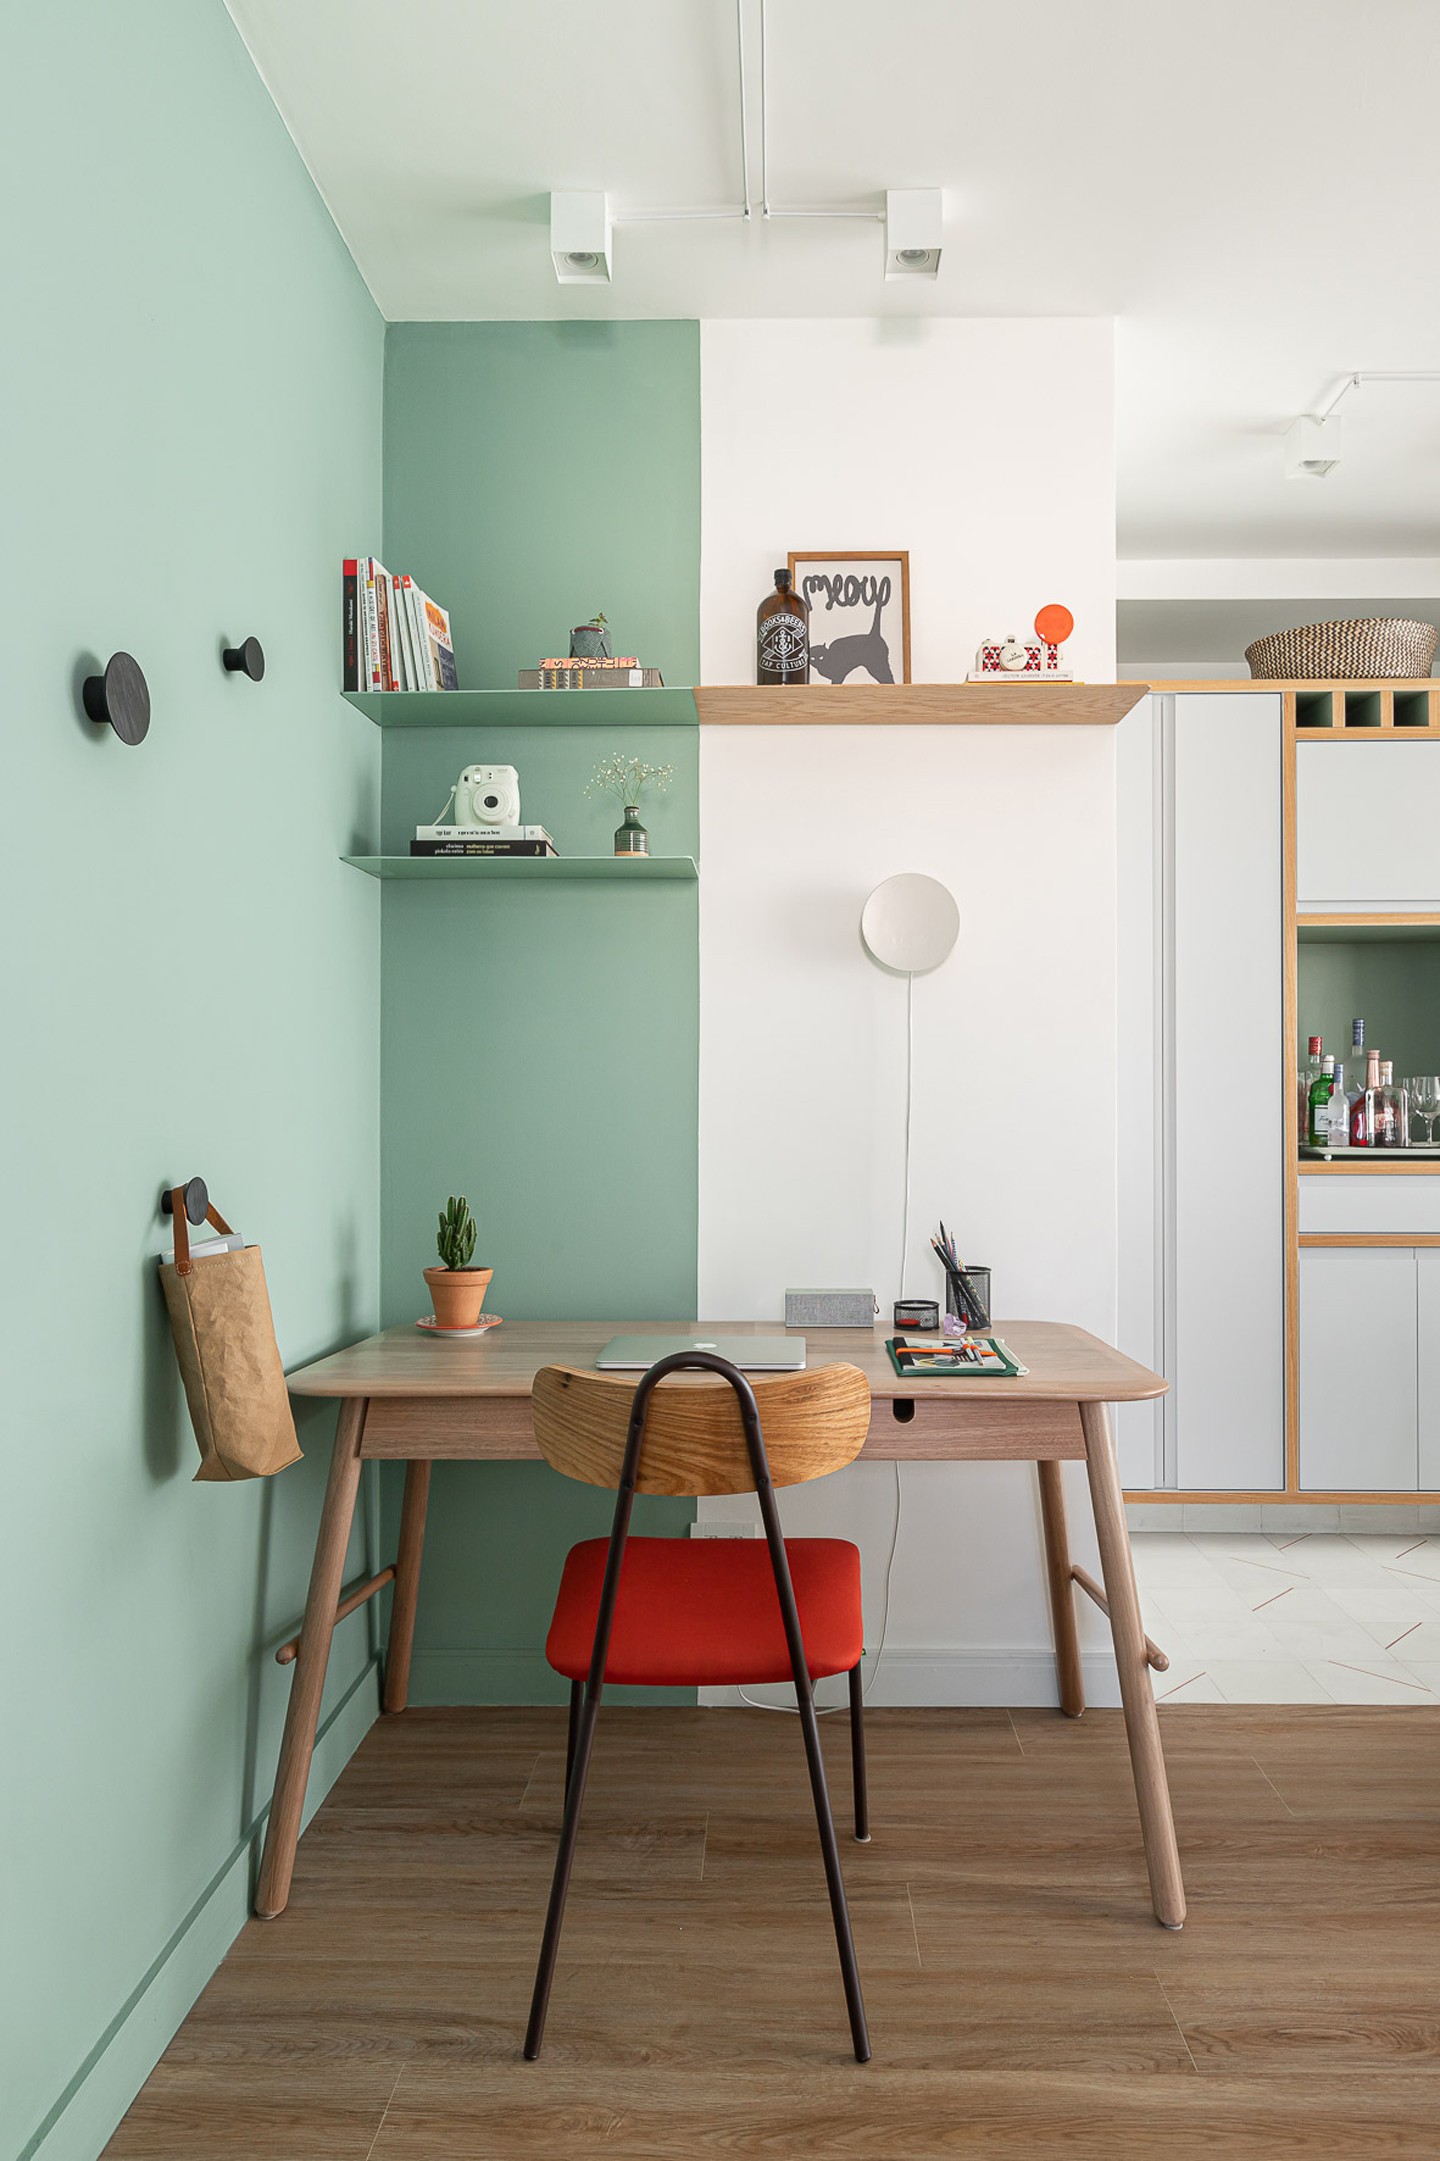 Décor do dia: home office colorido em apartamento pequeno (Foto: Gisele Rampazzo/Divulgação)